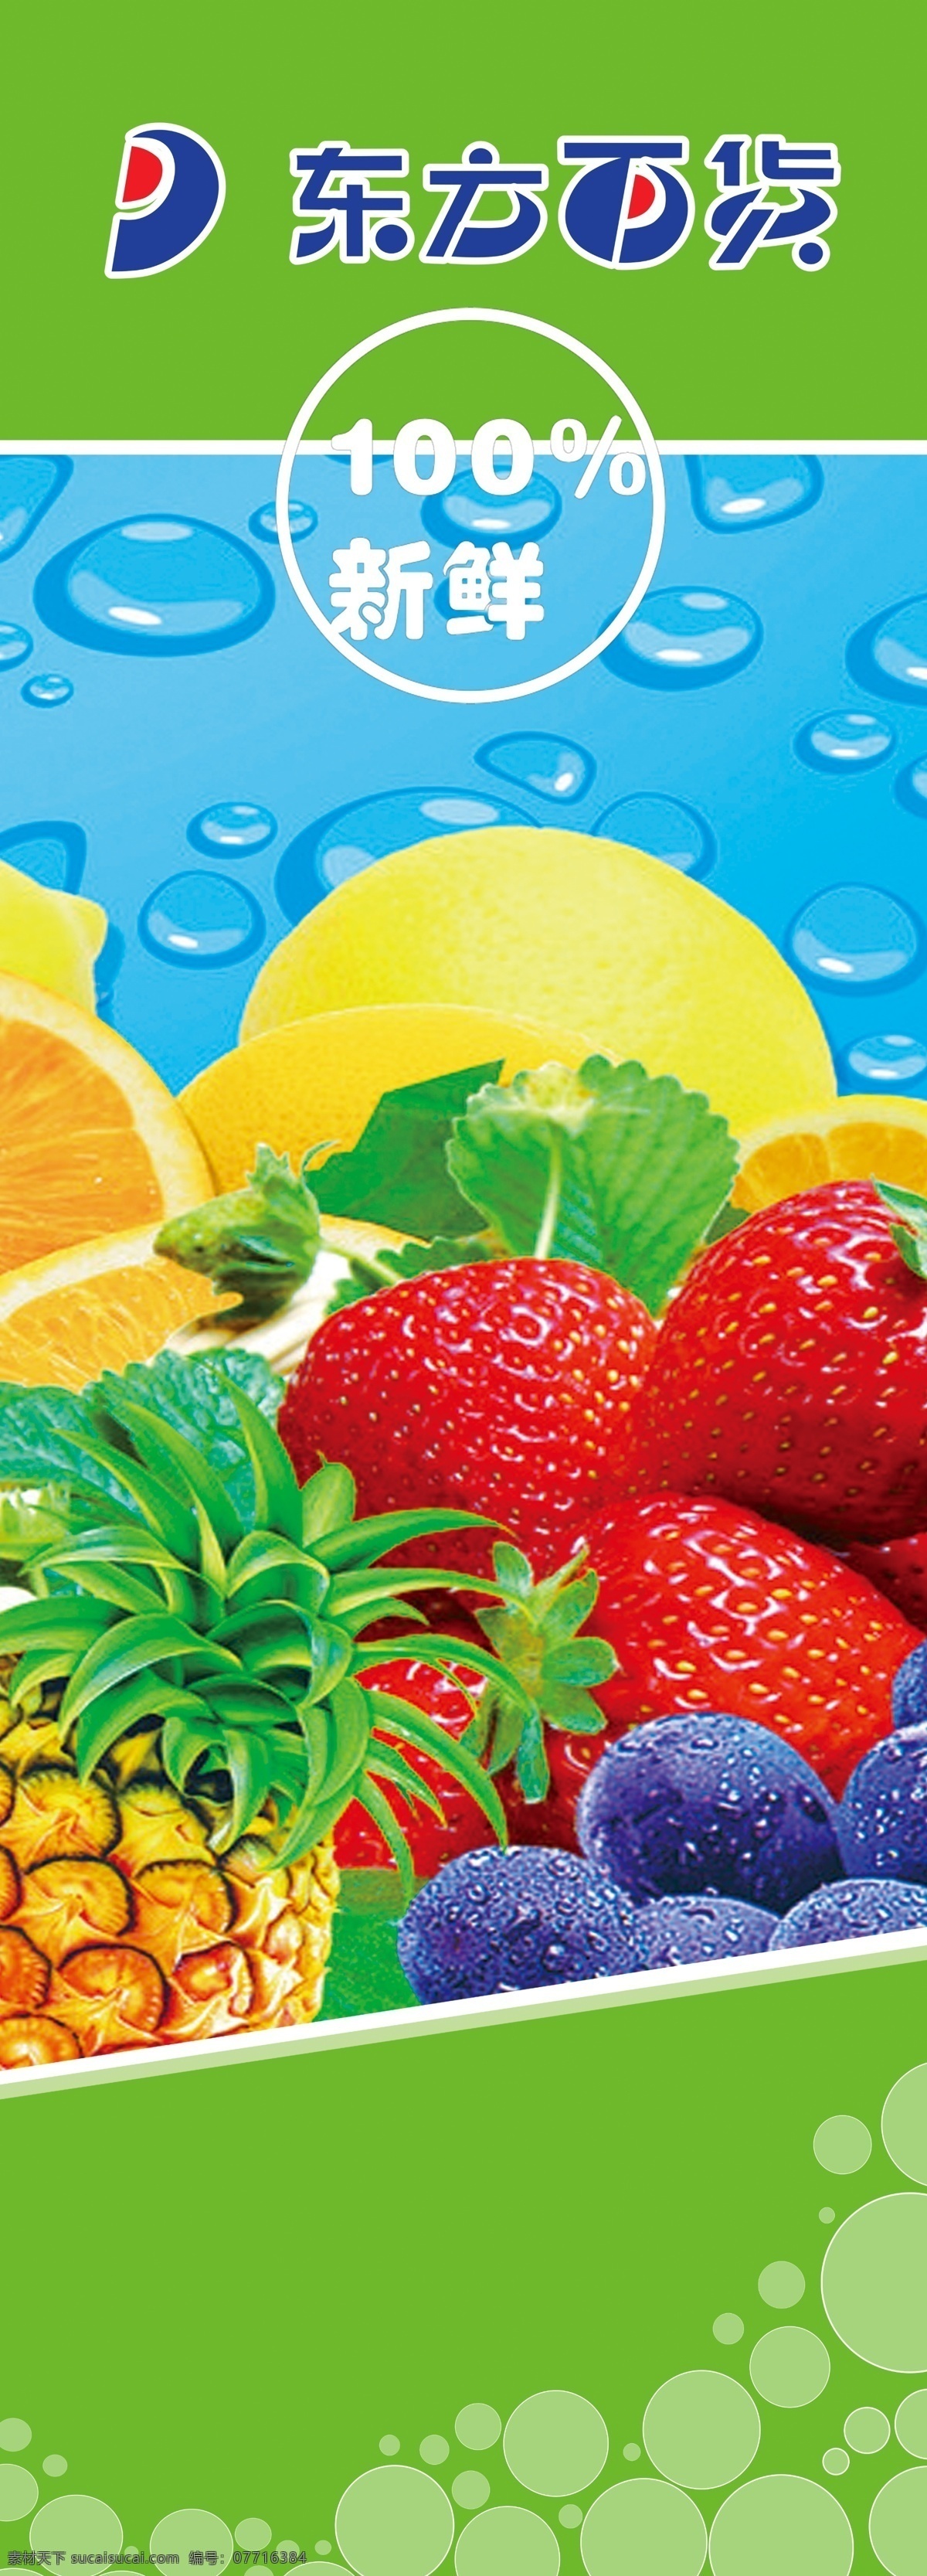 水果柱子 东方百货标志 新鲜 水果 柚子 草莓 菠萝 柠檬 橙子 葡萄 水滴 国内广告设计 广告设计模板 源文件